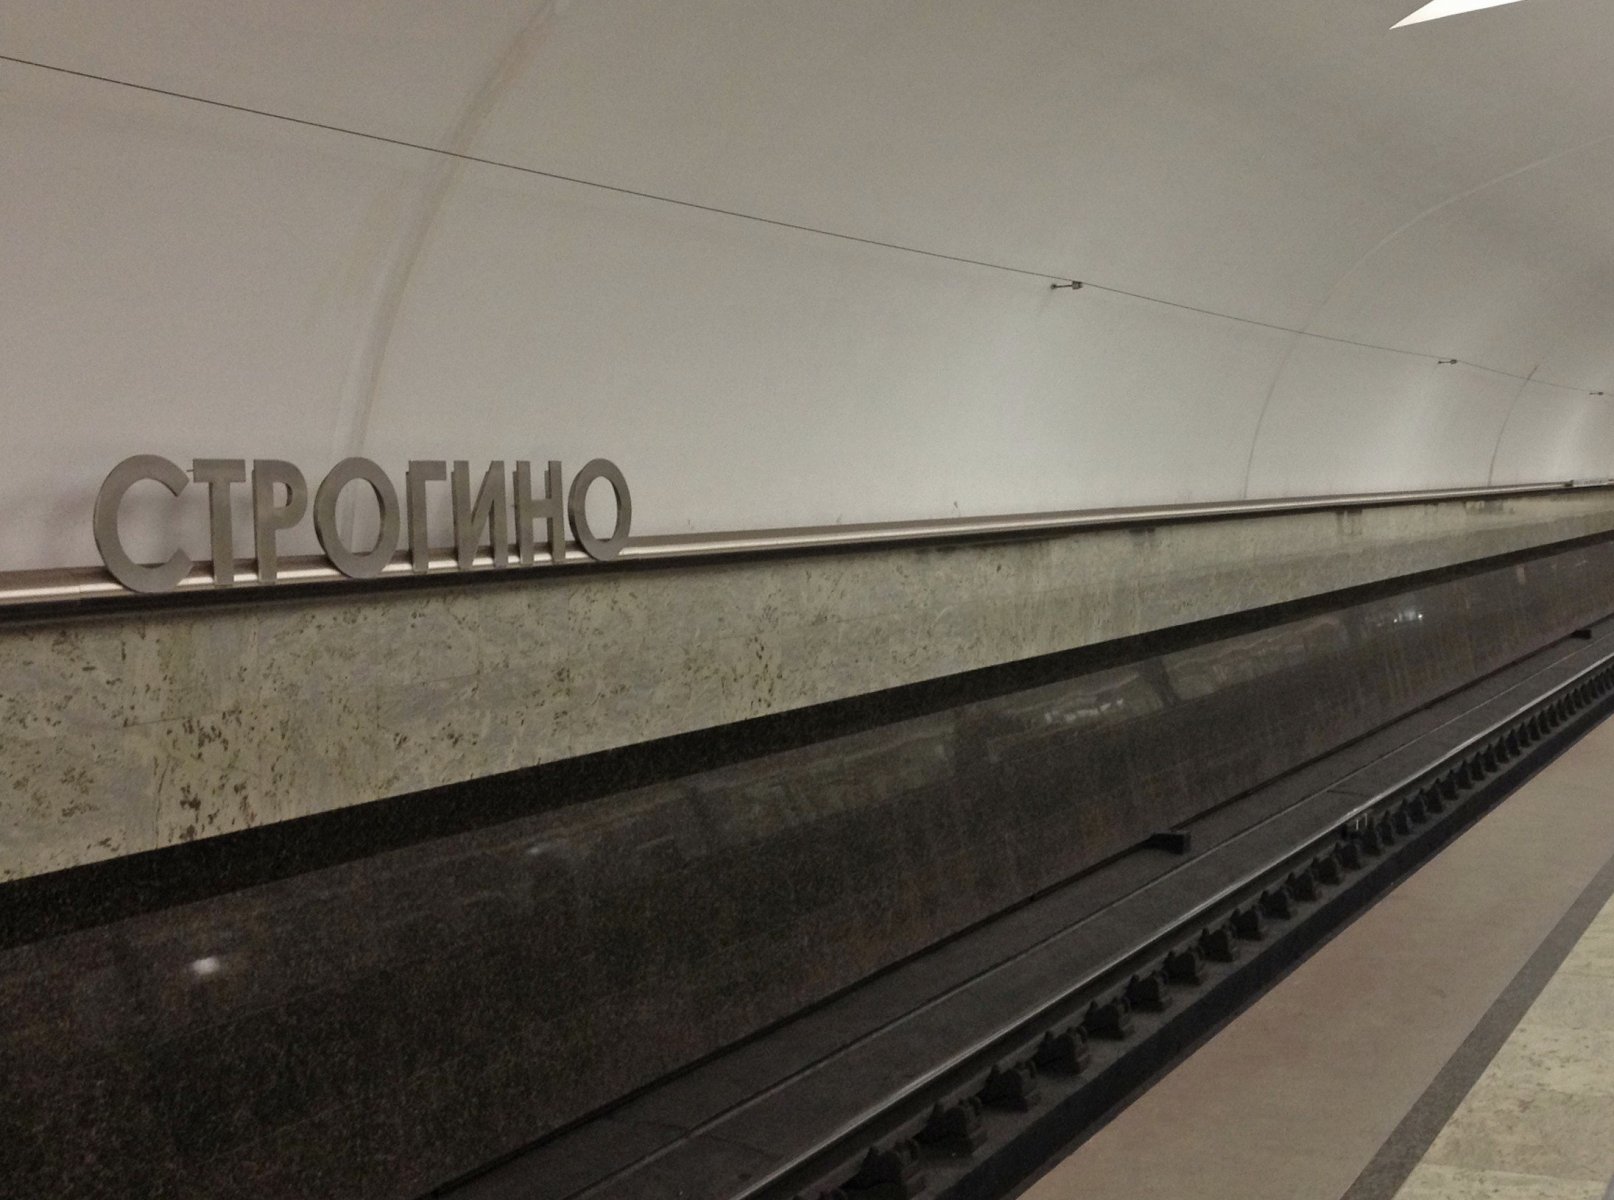 На станции метро «Строгино» временно не останавливаются поезда